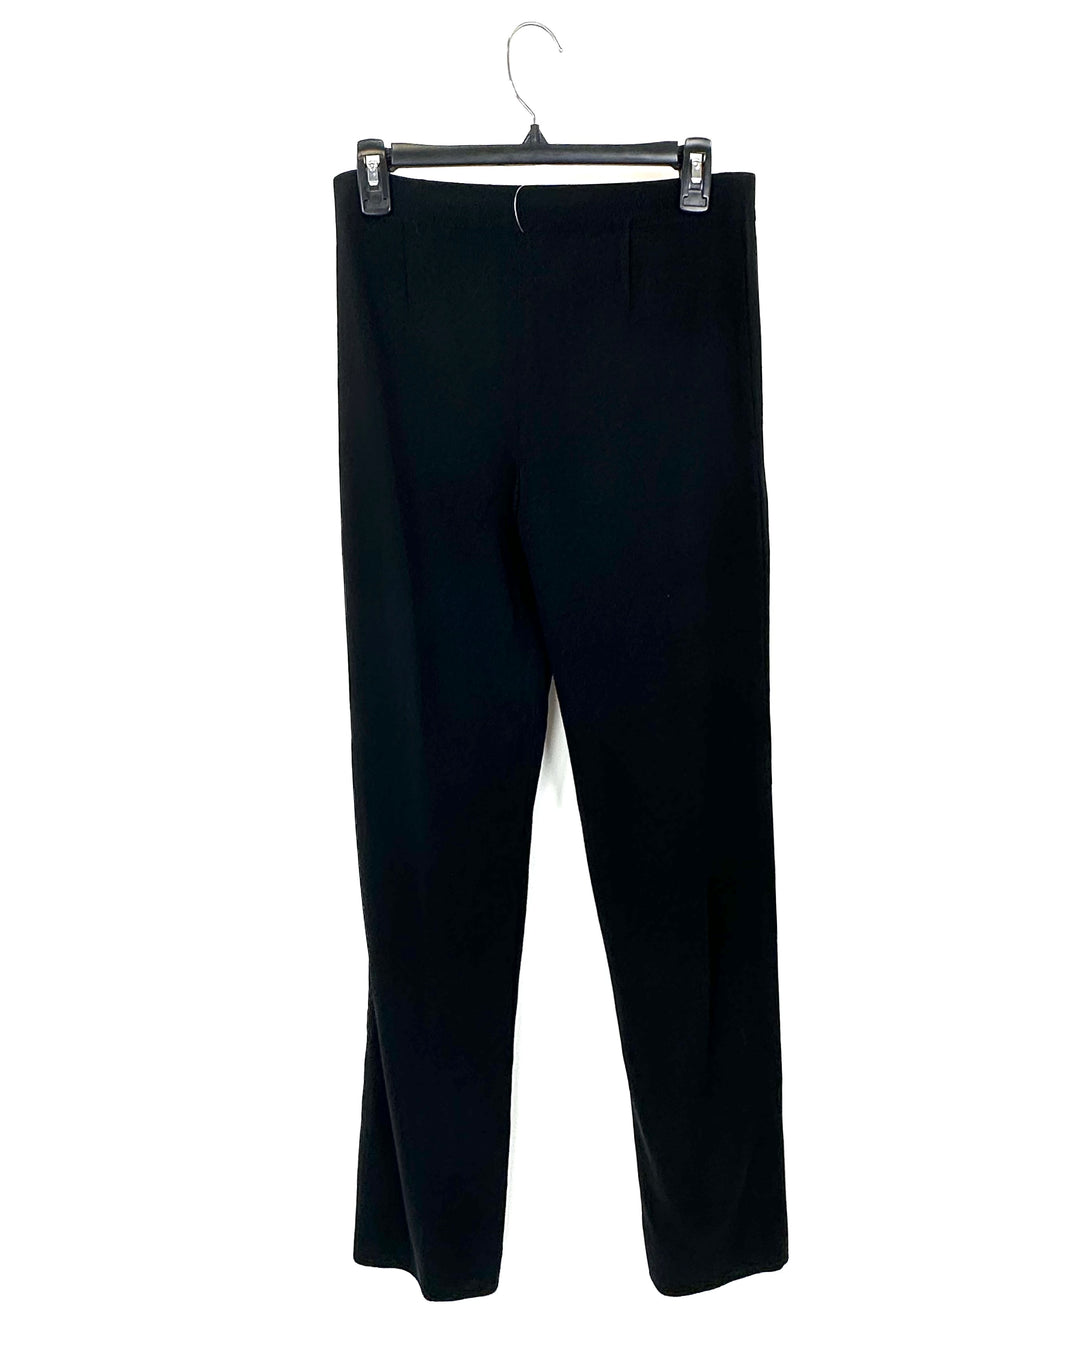 Black Pants - Size 2/4